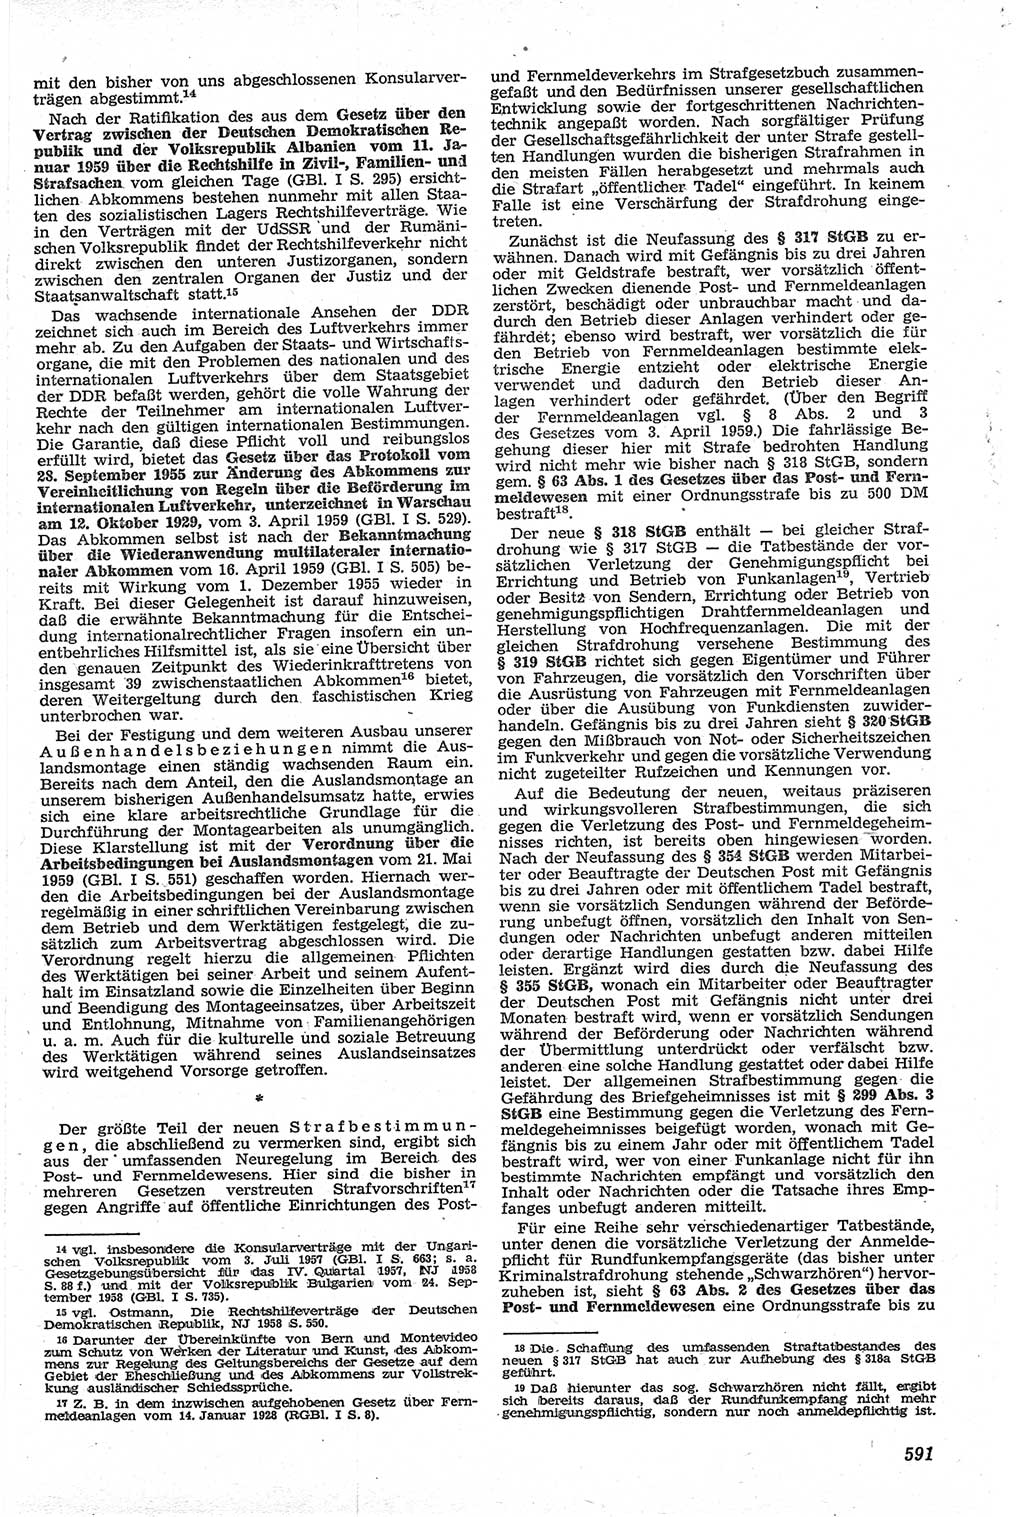 Neue Justiz (NJ), Zeitschrift für Recht und Rechtswissenschaft [Deutsche Demokratische Republik (DDR)], 13. Jahrgang 1959, Seite 591 (NJ DDR 1959, S. 591)